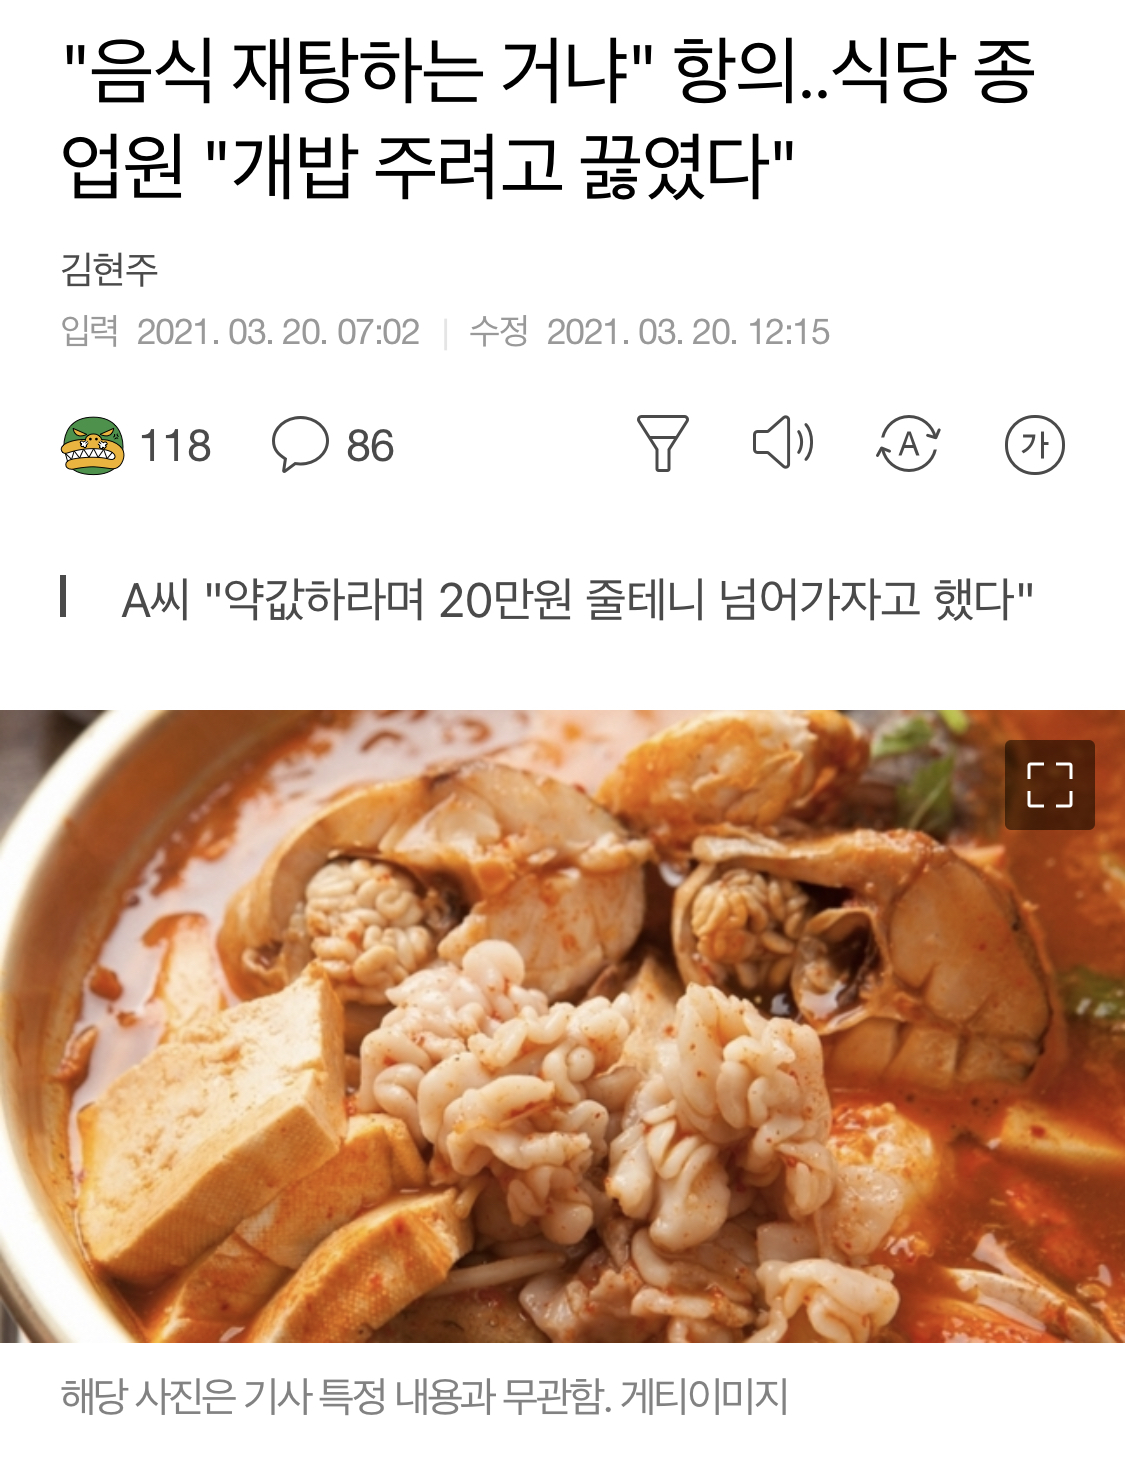 “음식 재탕하는 거냐” 항의…식당 종업원 “개밥 주려고 끓였다”